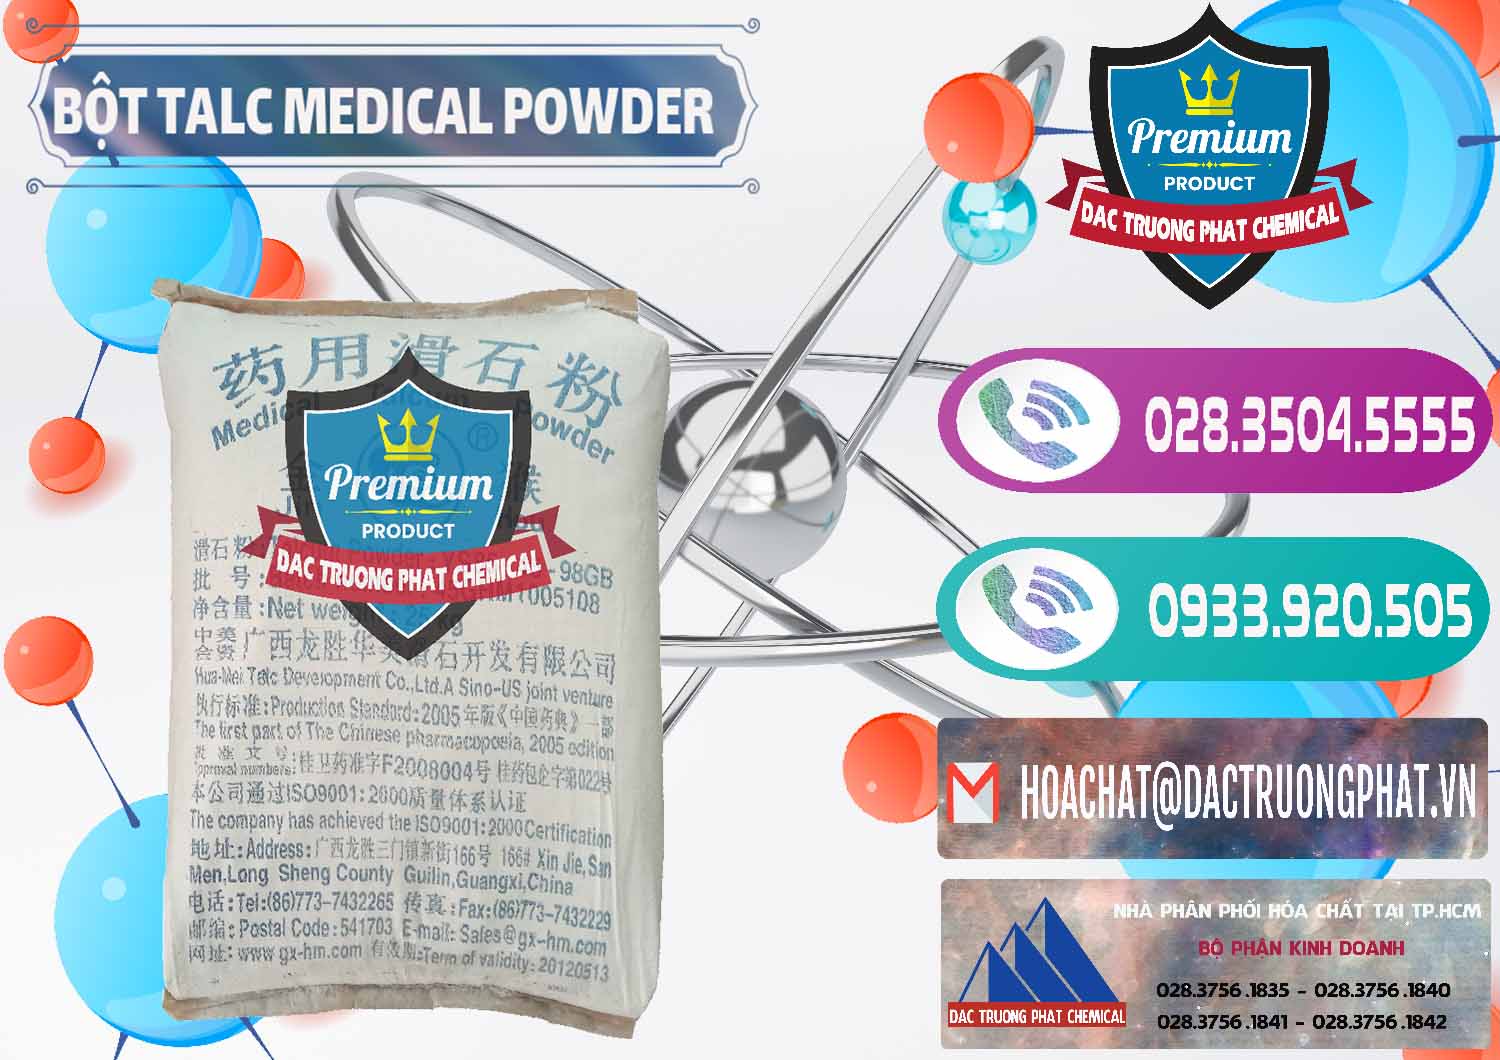 Nơi bán & phân phối Bột Talc Medical Powder Trung Quốc China - 0036 - Kinh doanh _ phân phối hóa chất tại TP.HCM - hoachatxulynuoc.com